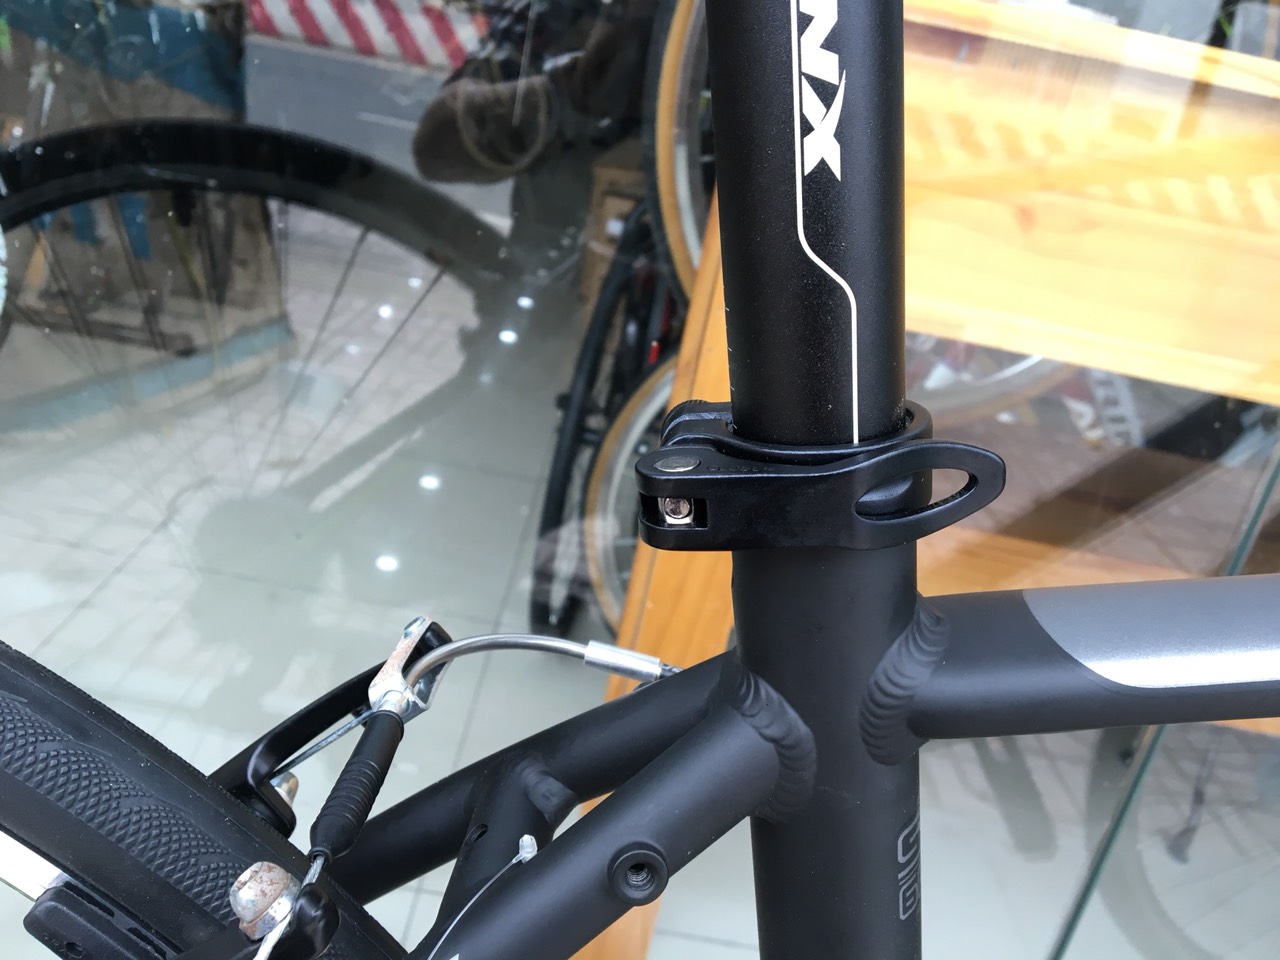 Xe đạp thể thao TRINX FREE 1.0 2019 Black Red